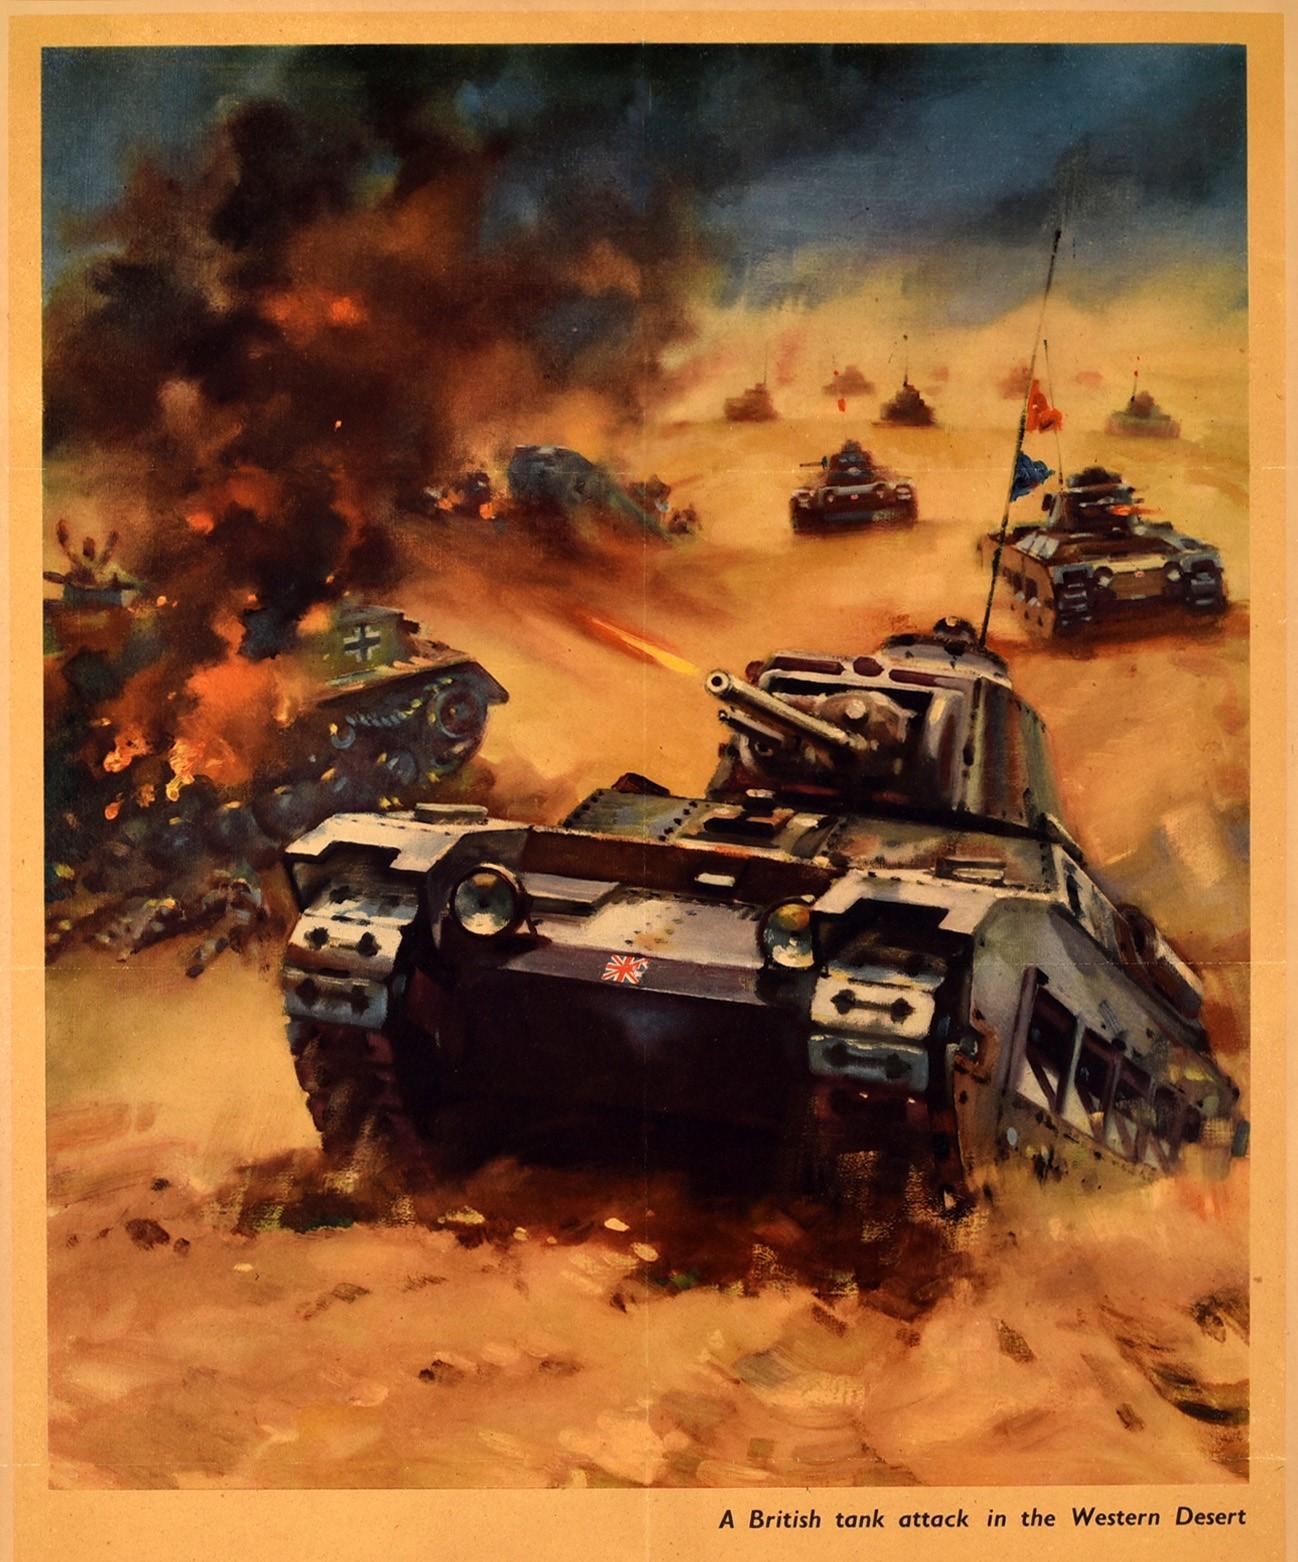 Affiche de propagande originale de la Seconde Guerre mondiale, Back Them Up ! Une attaque de chars britanniques dans le désert occidental, comportant une illustration dynamique d'un char marqué d'un drapeau britannique à l'avant conduisant vers une